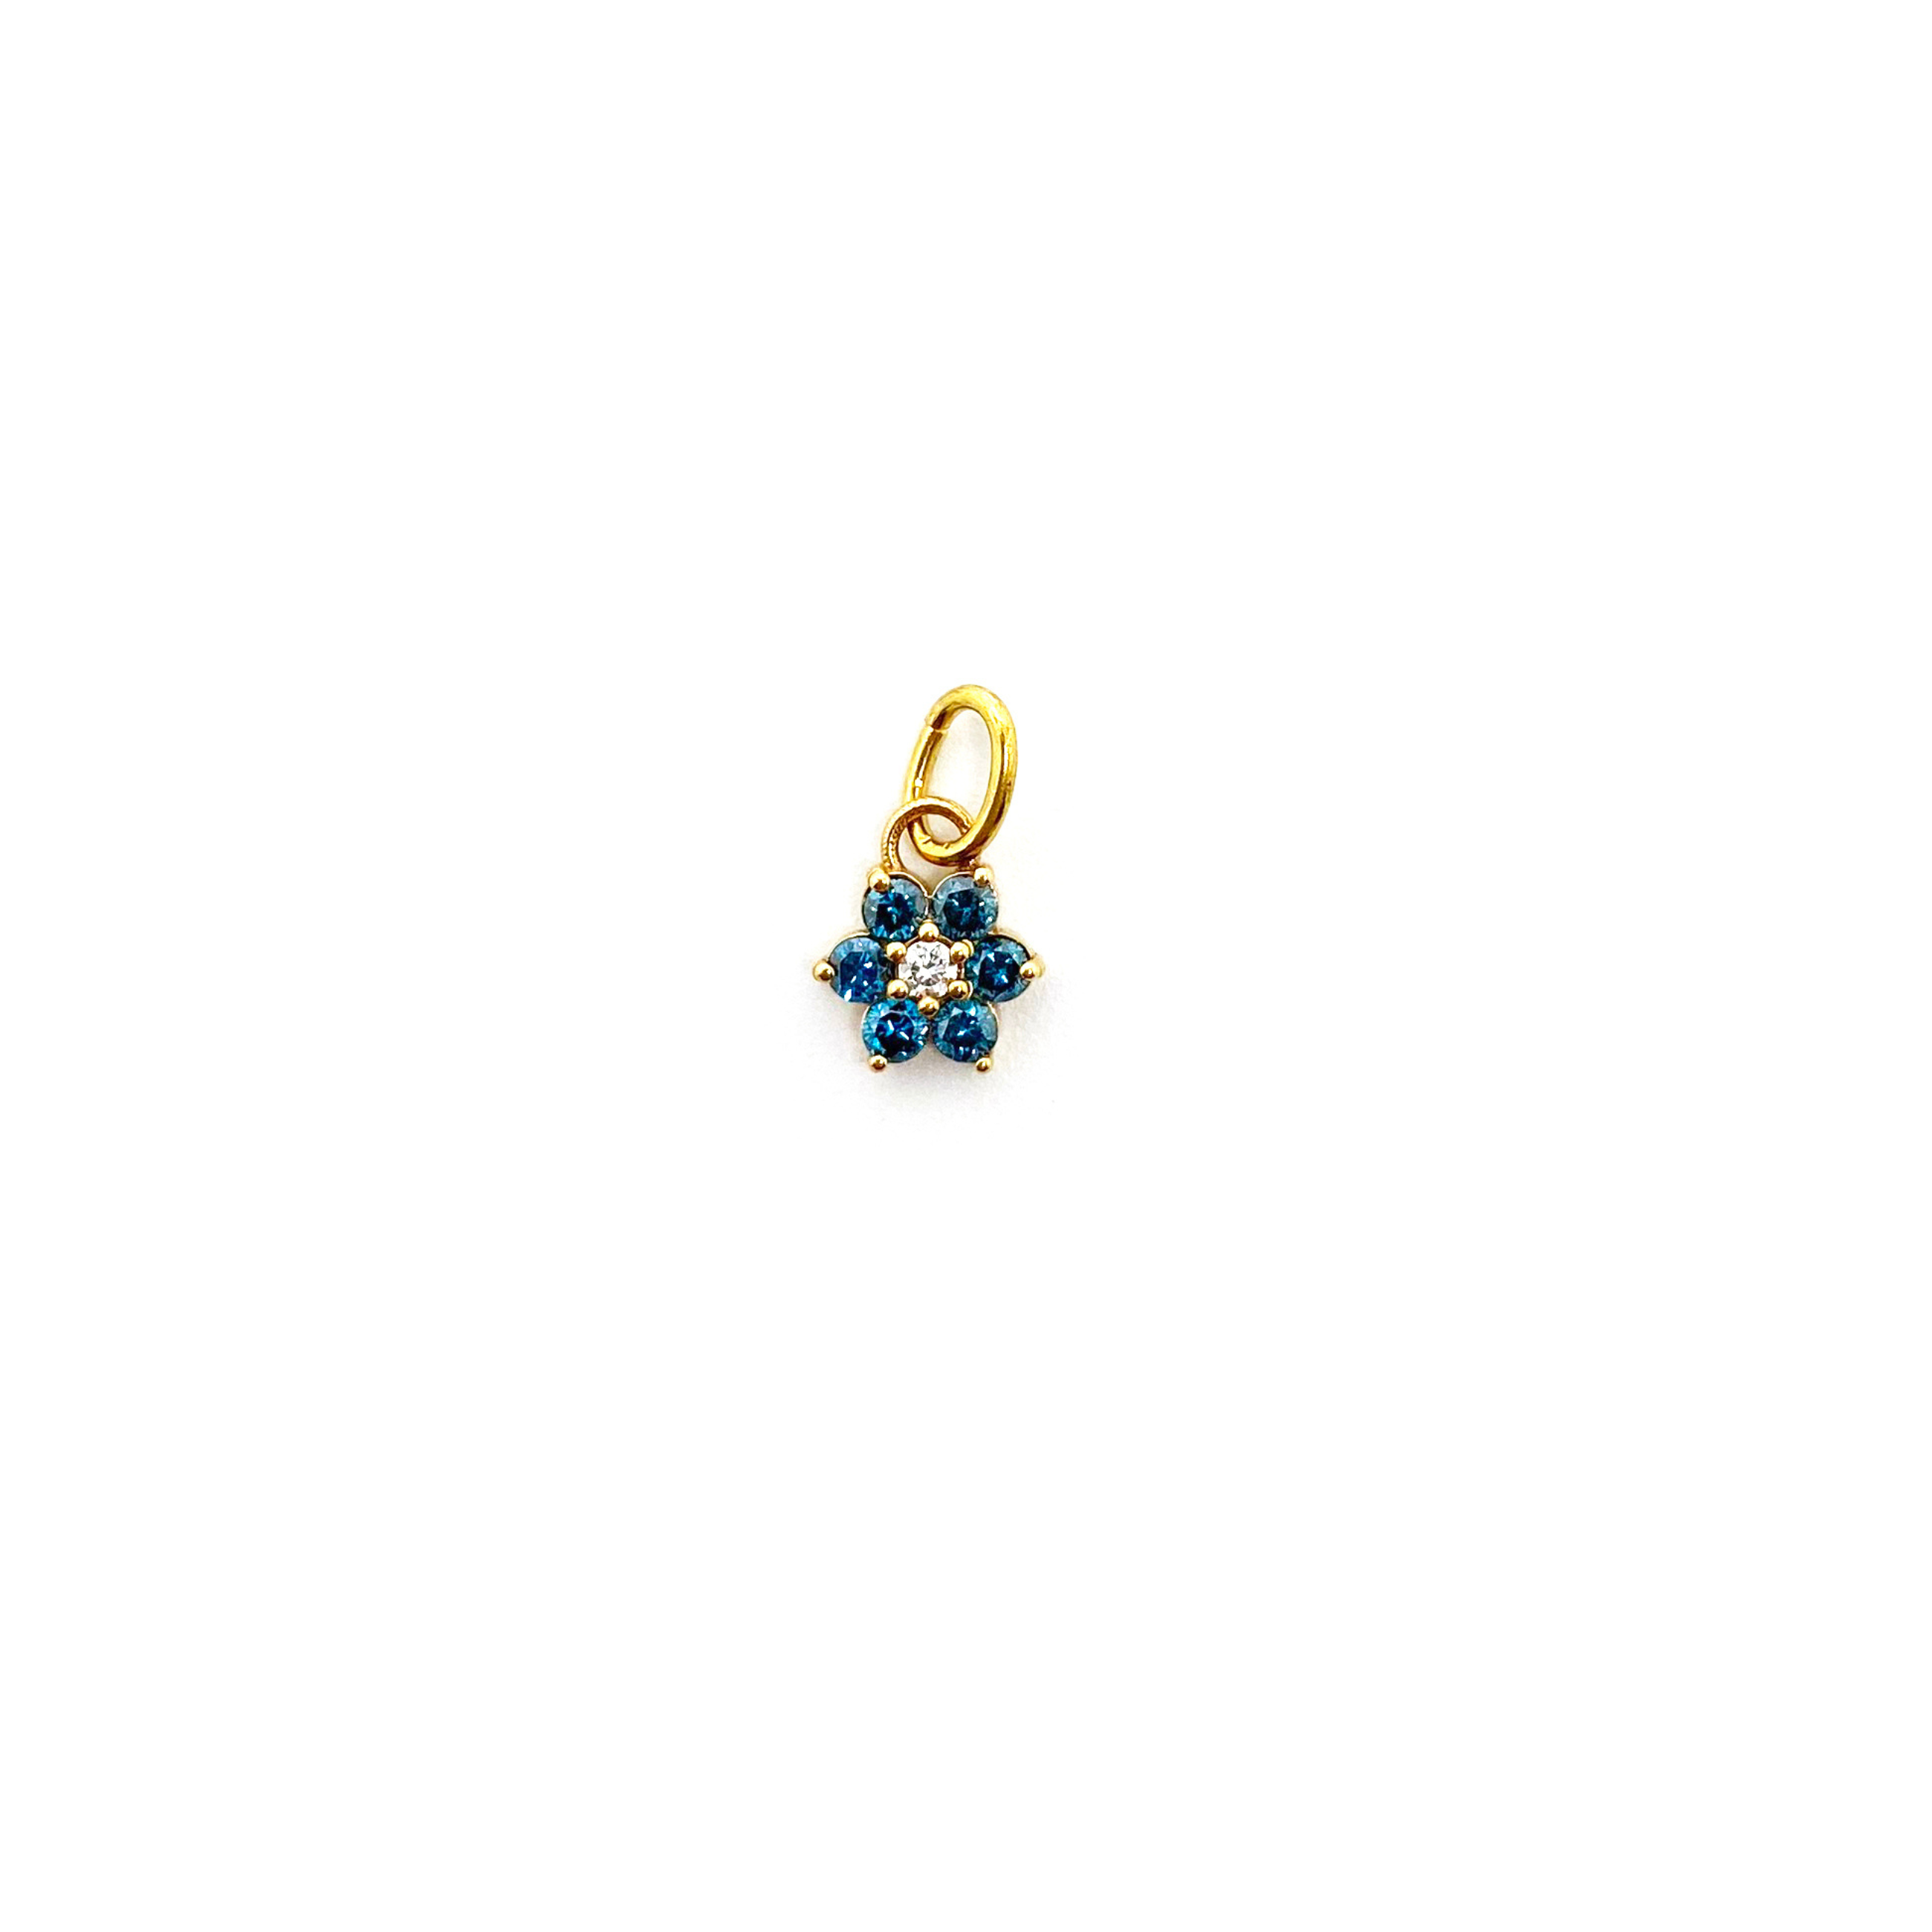 Jumbo Blue Diamond Flower Pendant